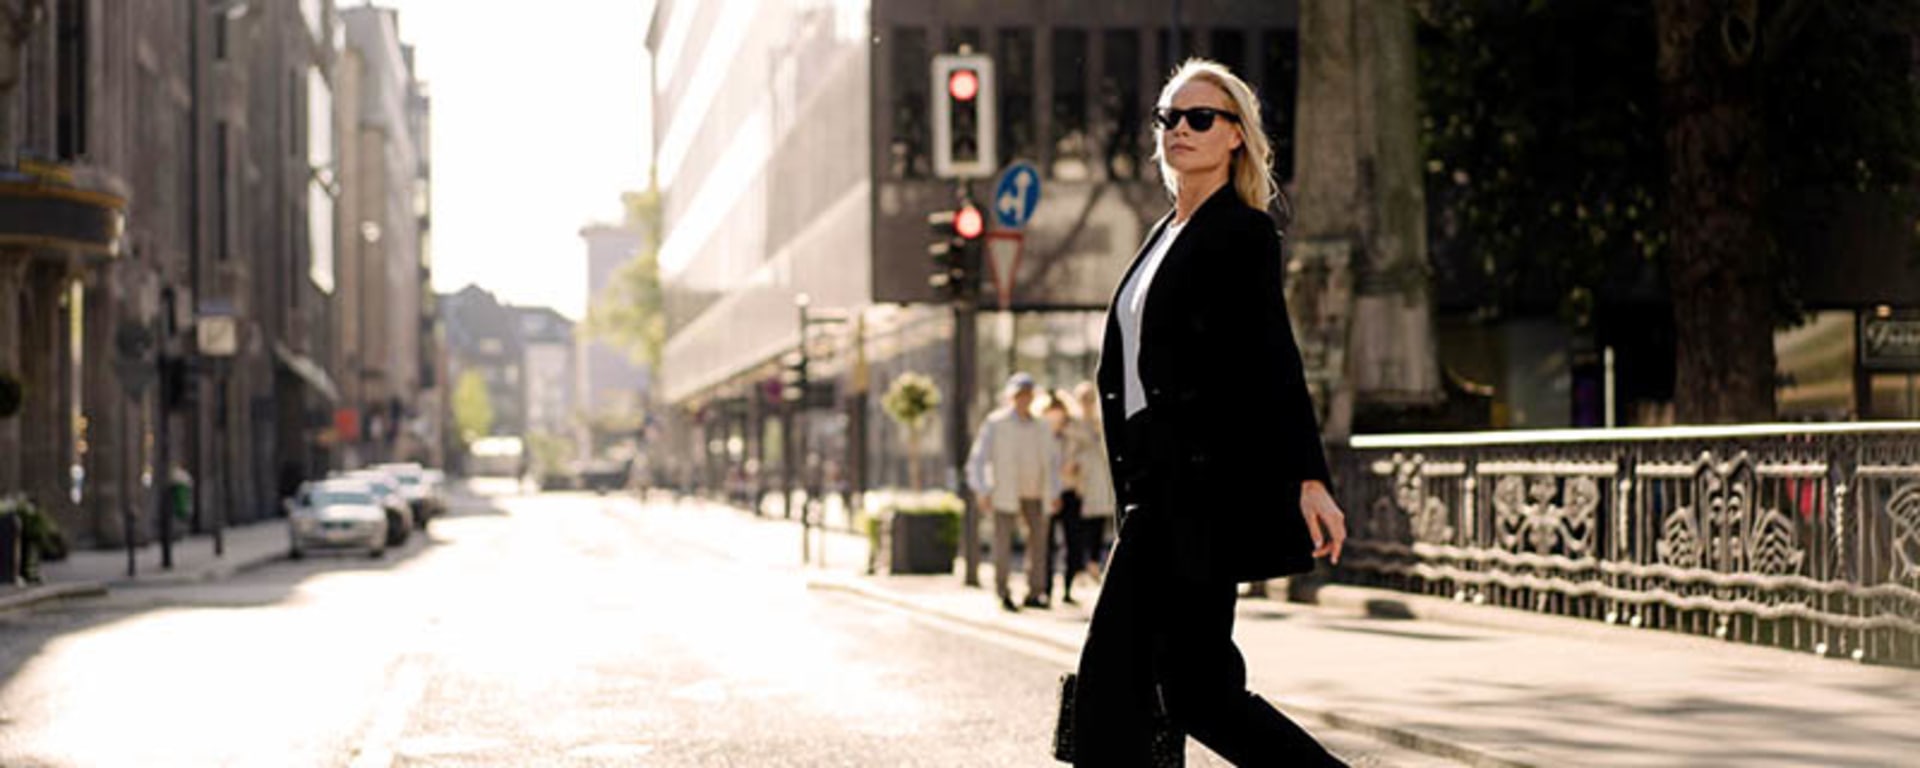 Eine Frau in einem schwarzen Anzug und mit Sonnenbrille überquert selbstbewusst eine Straße.